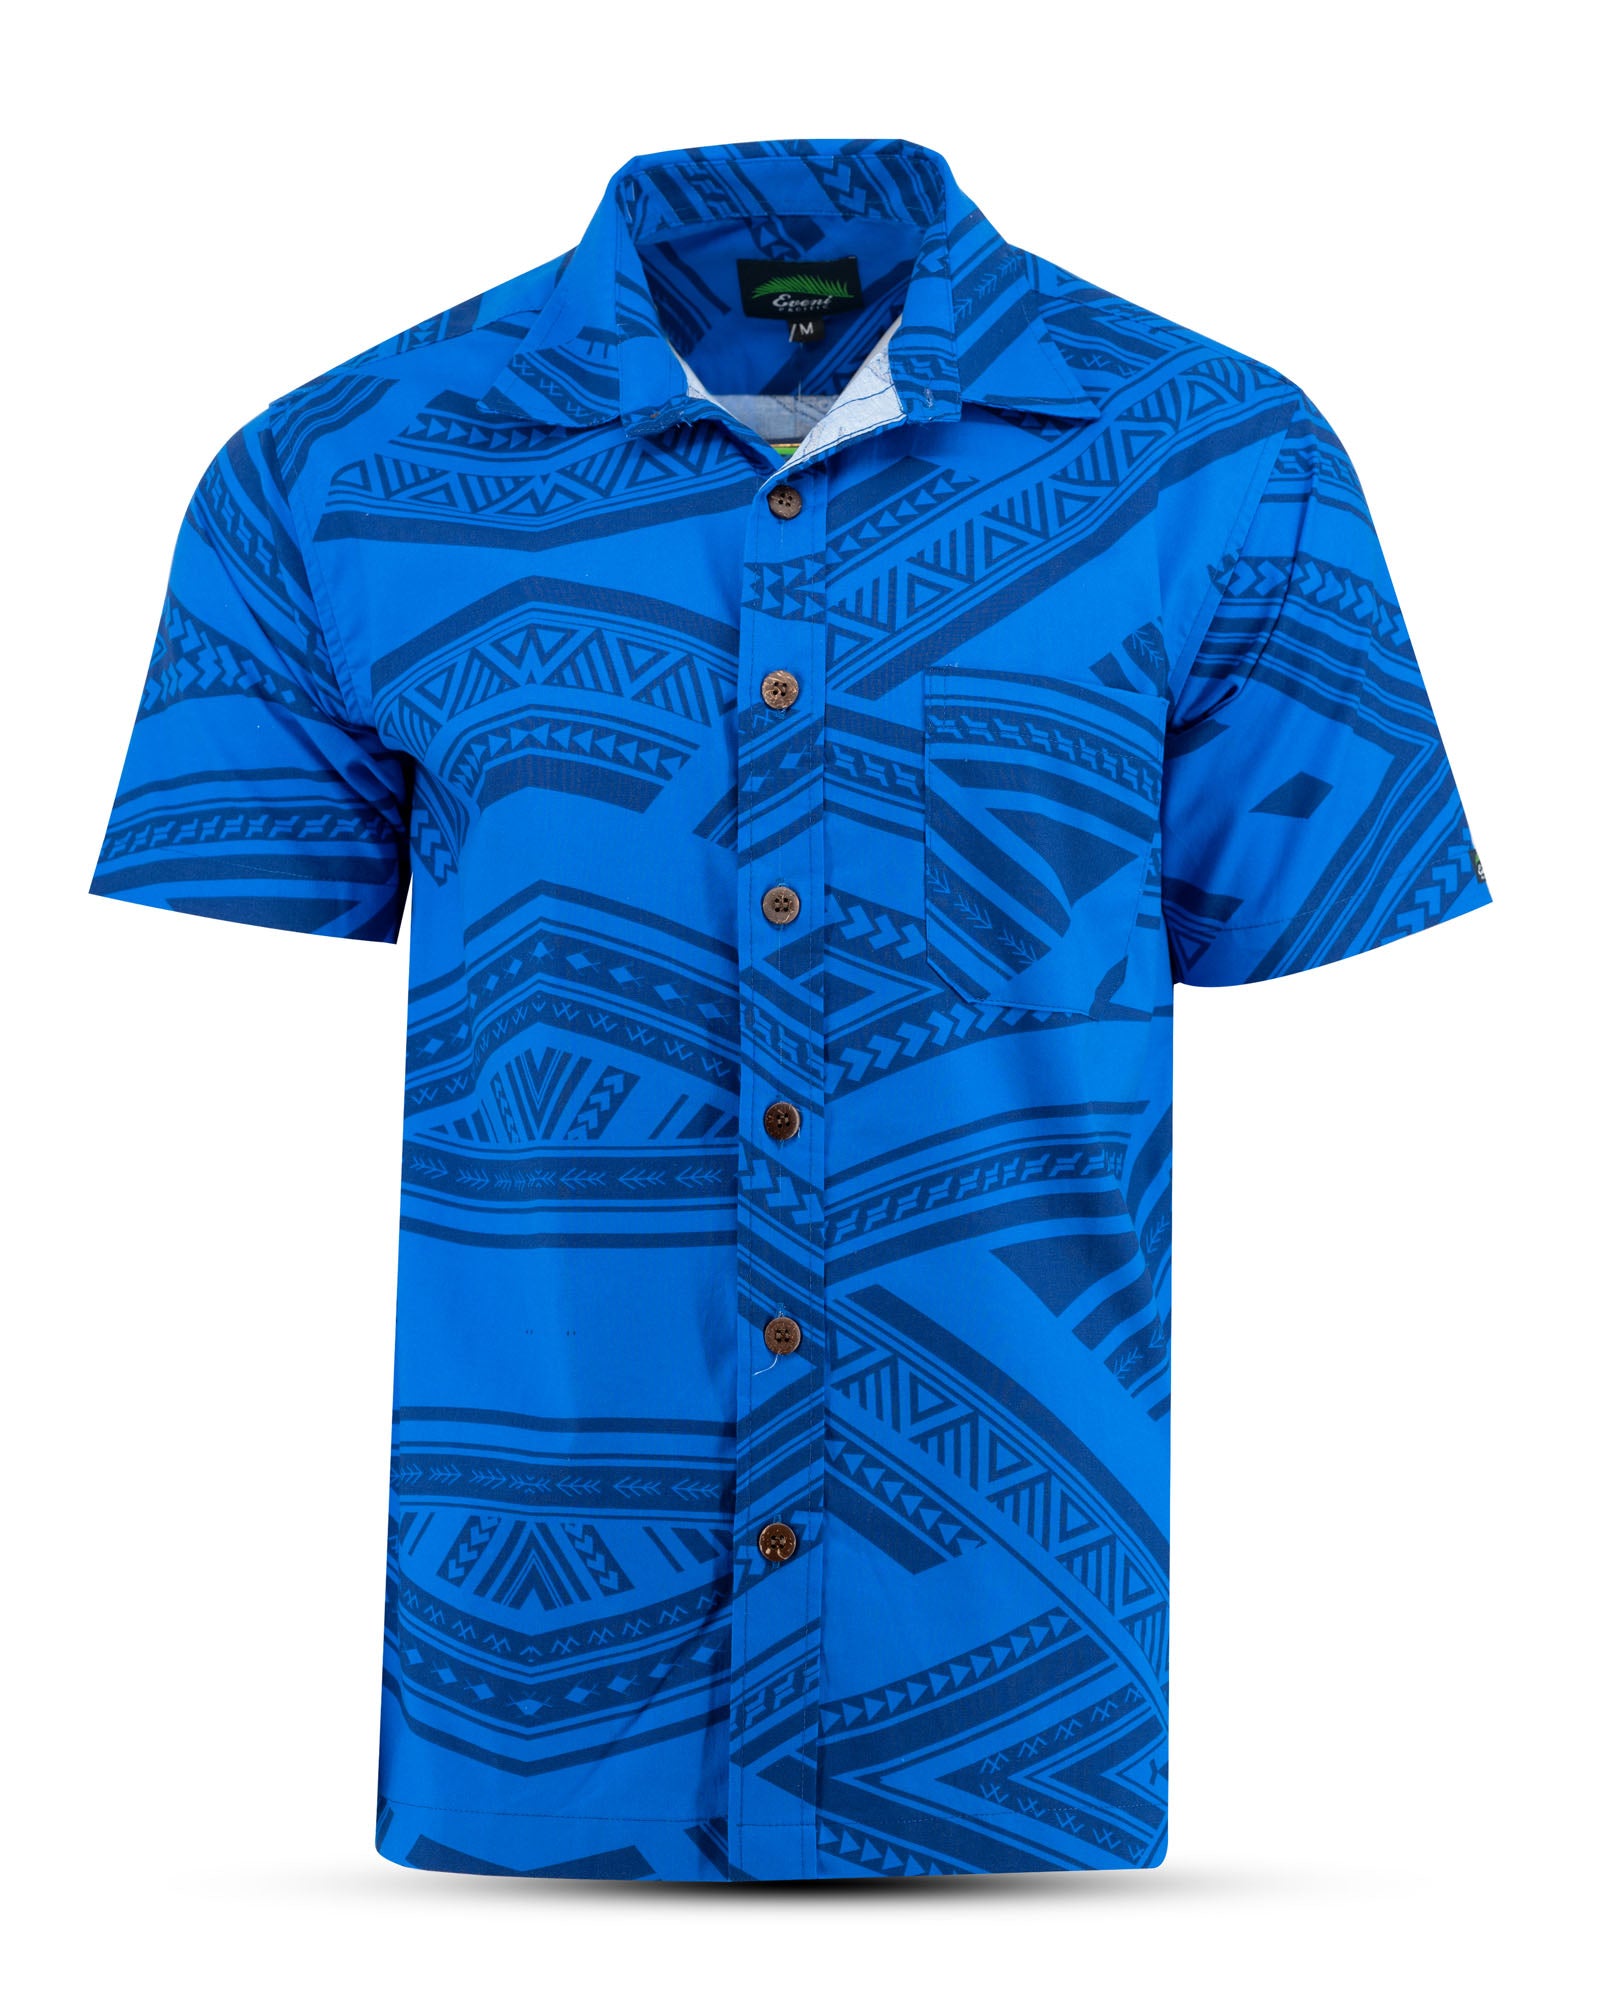 Eveni Pacific Men's Classic Shirt - Sympathy Blue